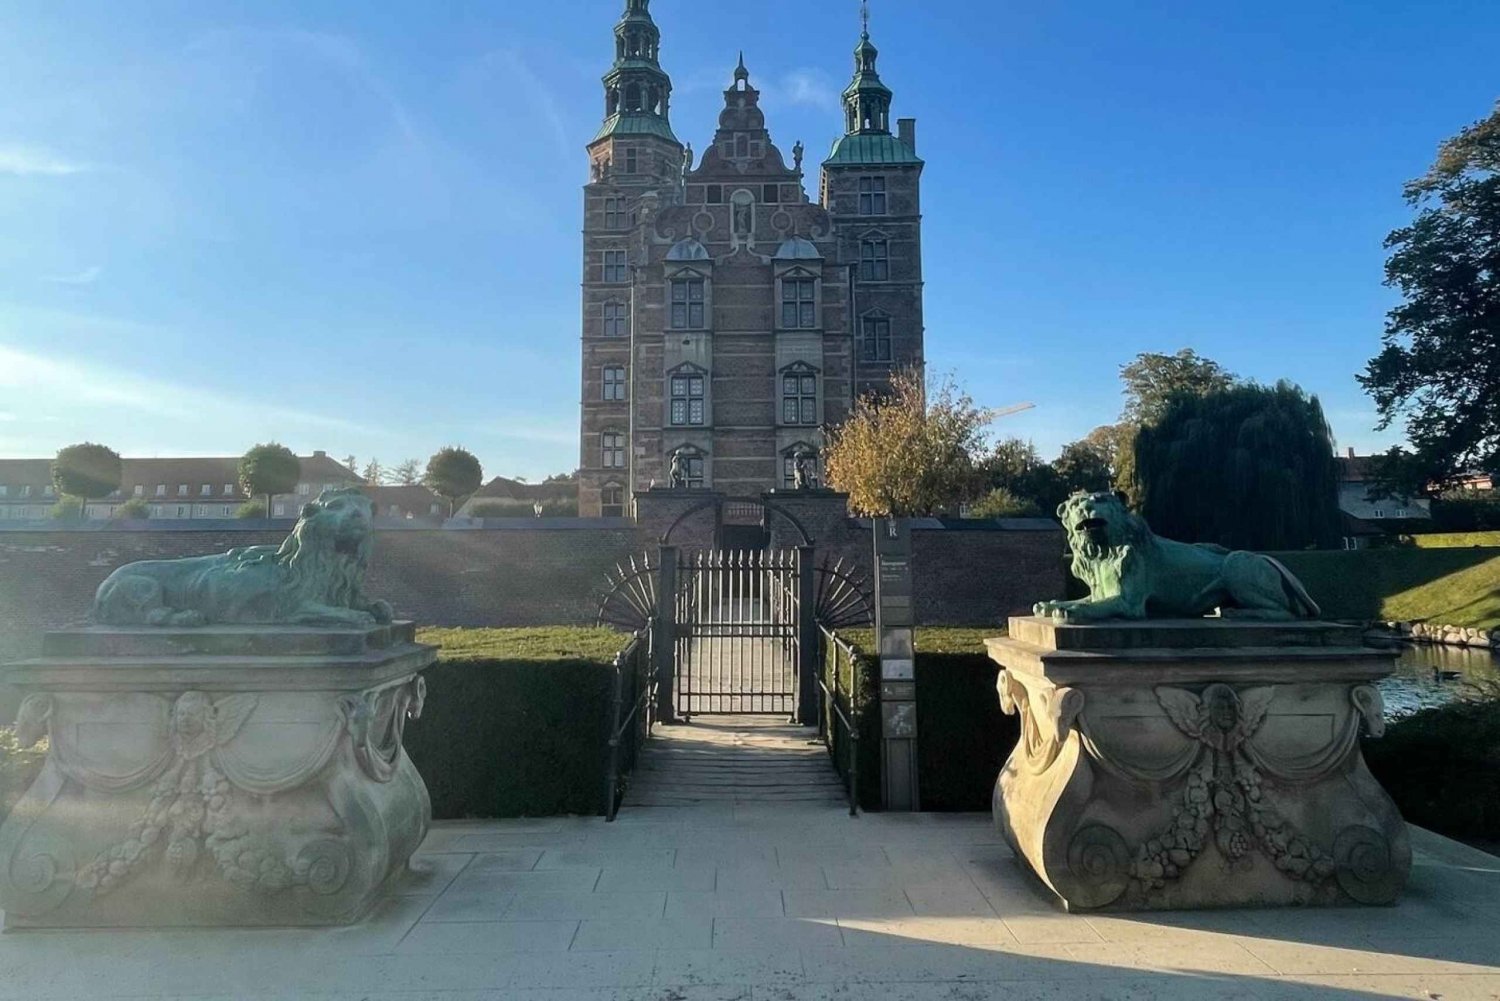 København: Kongens Have Outdoor Escape Room Game